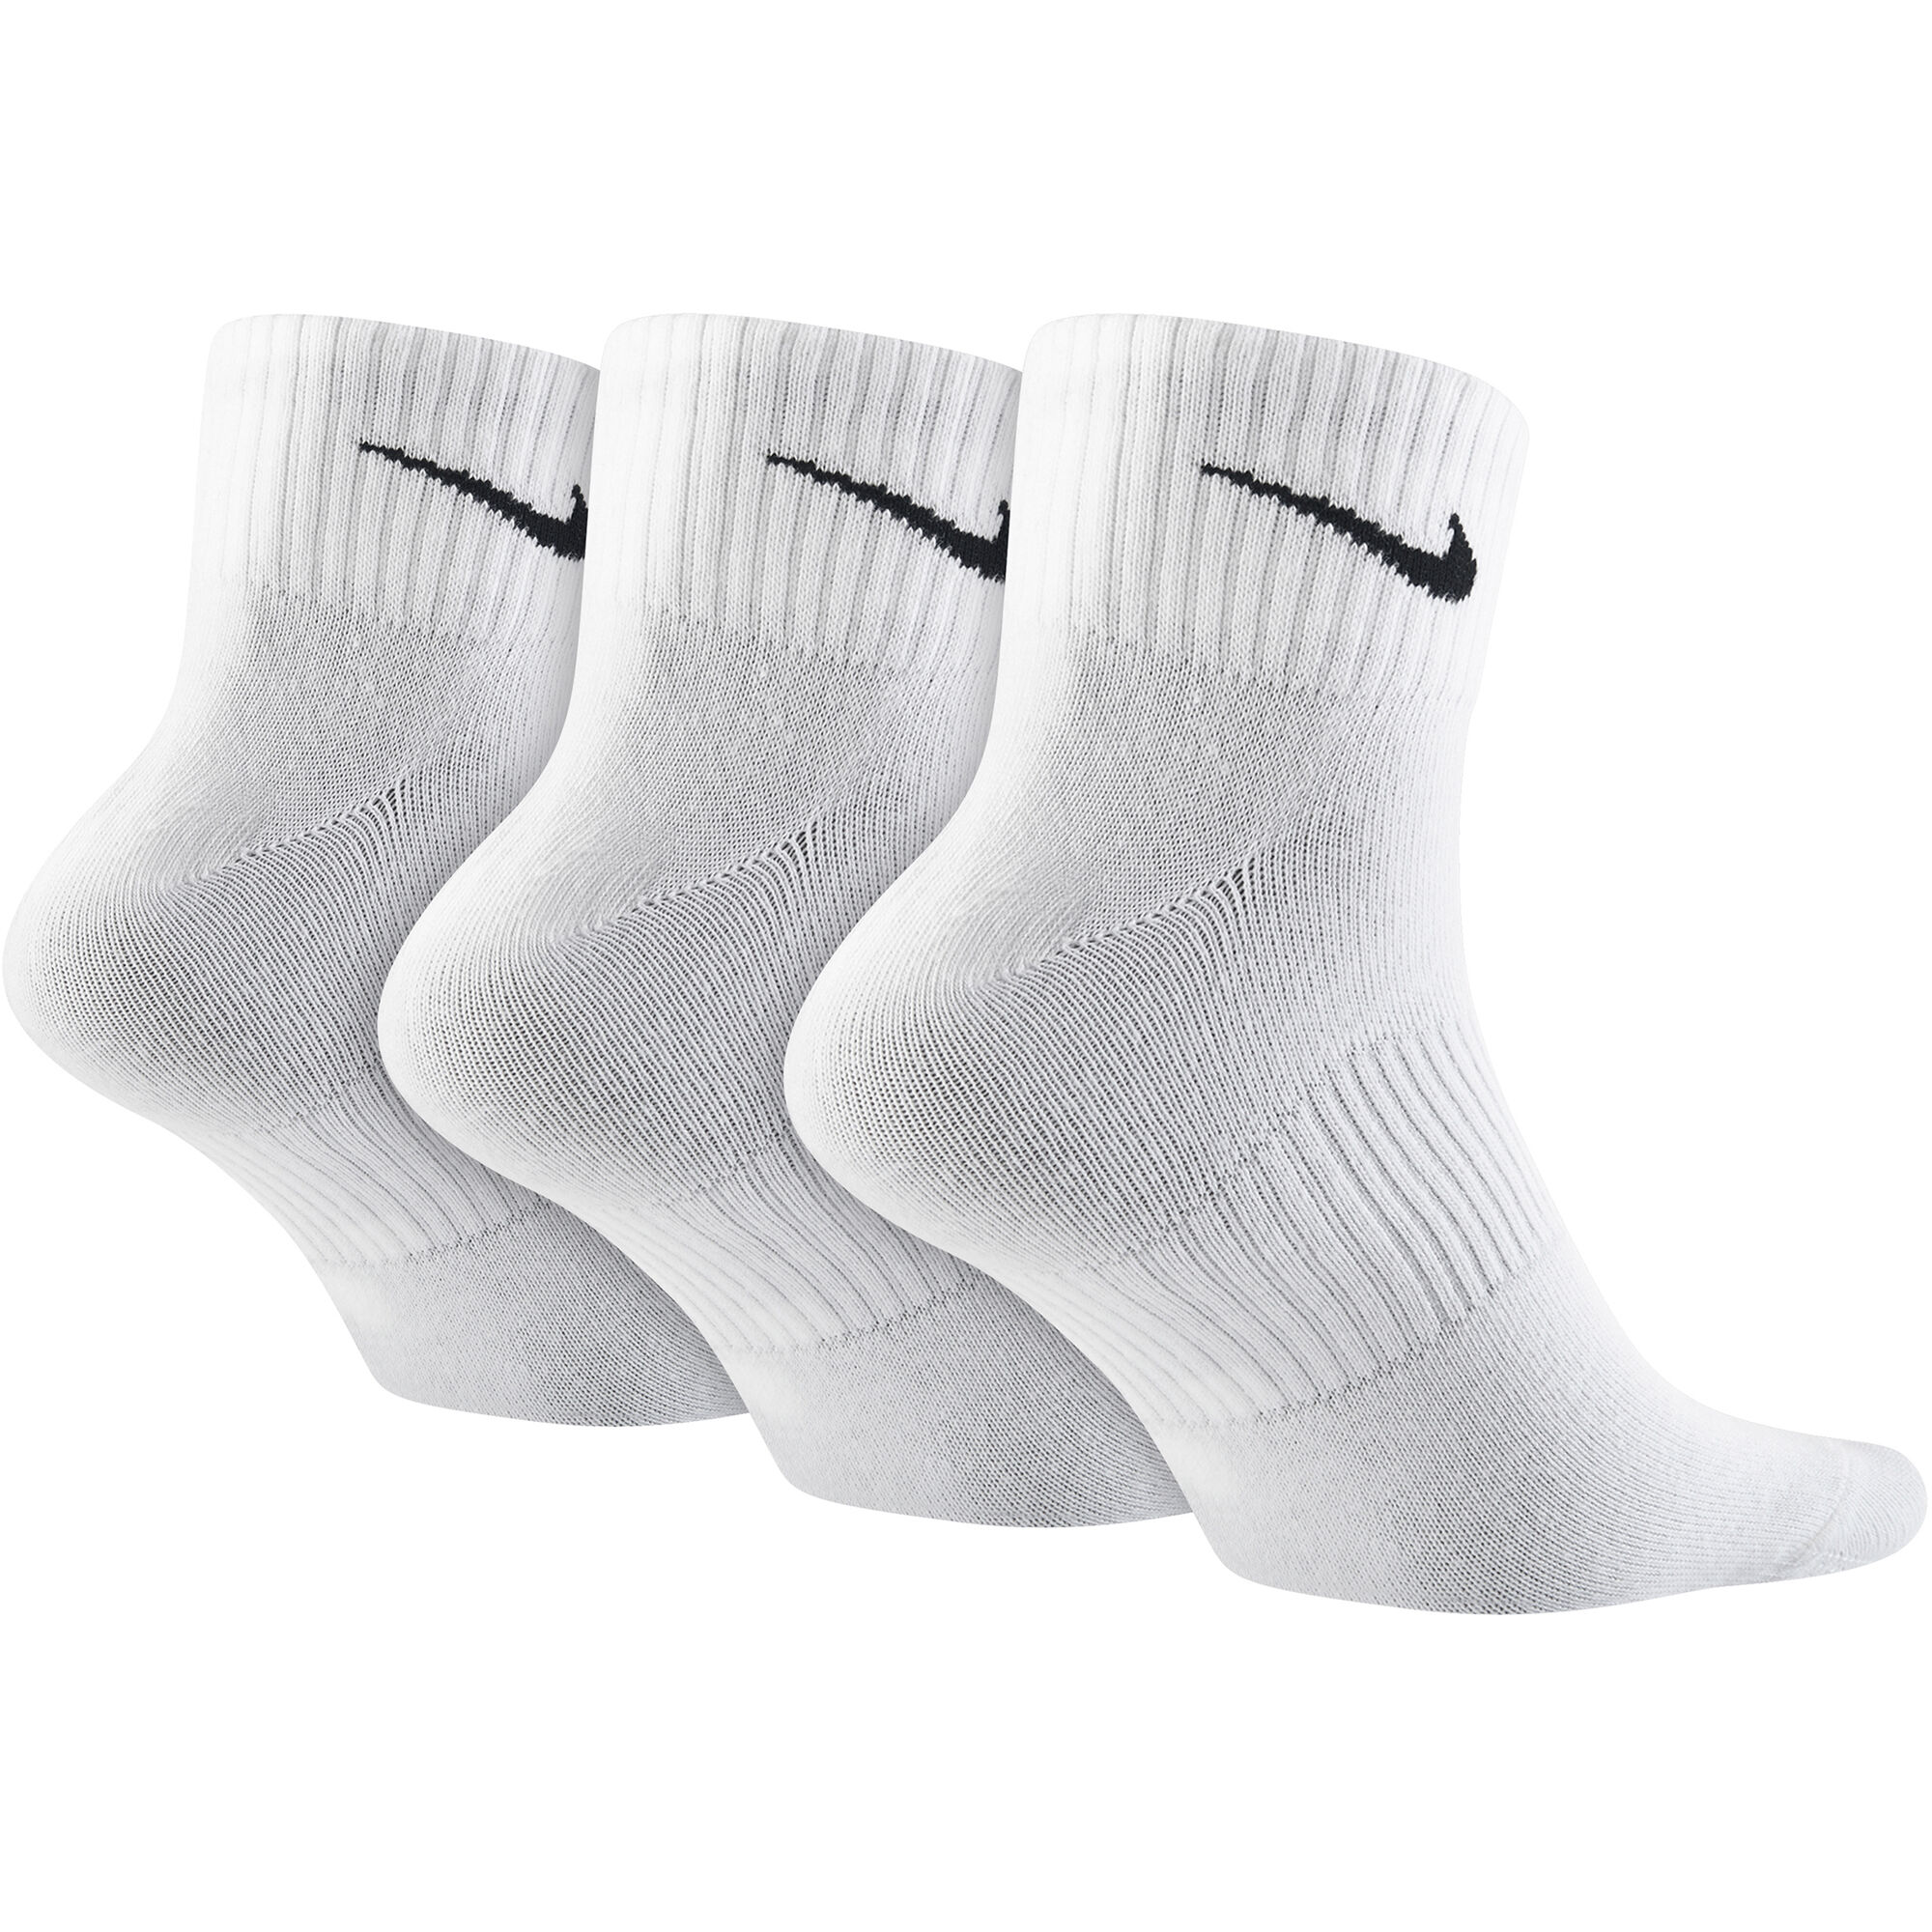 Носки найк короткие. Носки найк мужские белые короткие. Носки найк 3 пары. Sx4508-101 Nike. Носки найк спортивные.